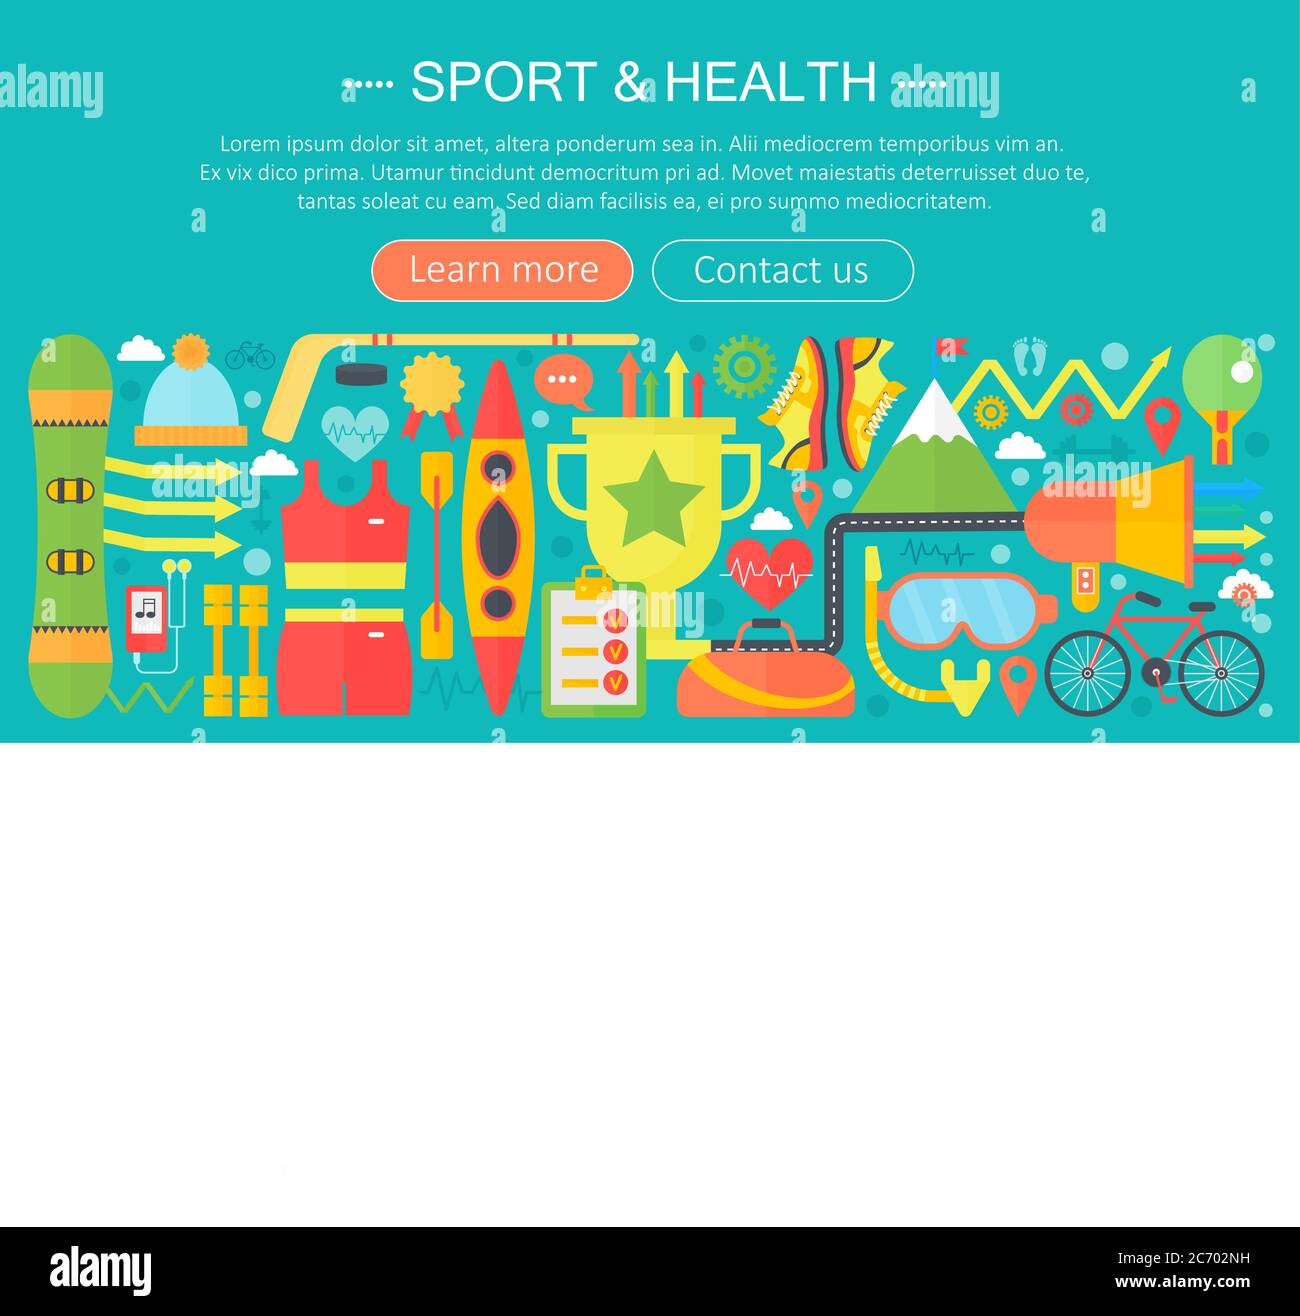 Gesundes Lifestyle-Konzept mit Food und Sport-Icons. Sport und Fitness flach Konzept Infografiken Vorlage Header Design. Vektorgrafik Stock Vektor